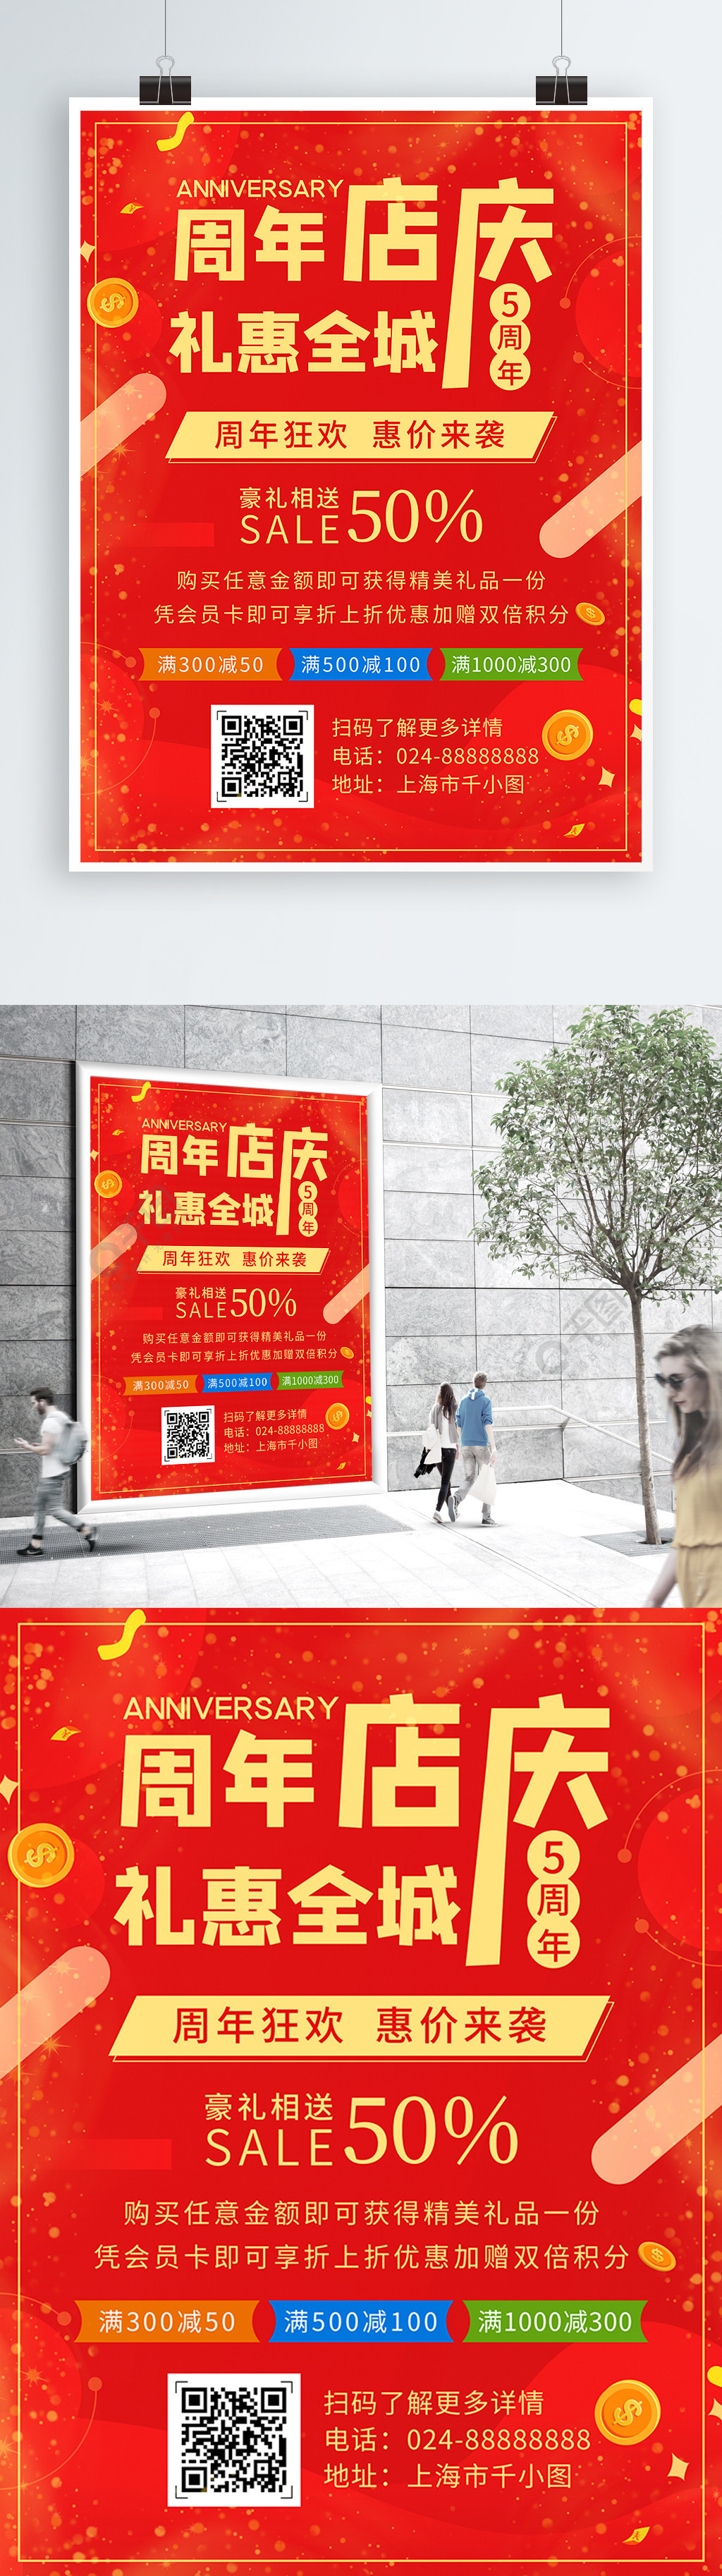 红色大气周年店庆宣传优惠活动海报1年前发布